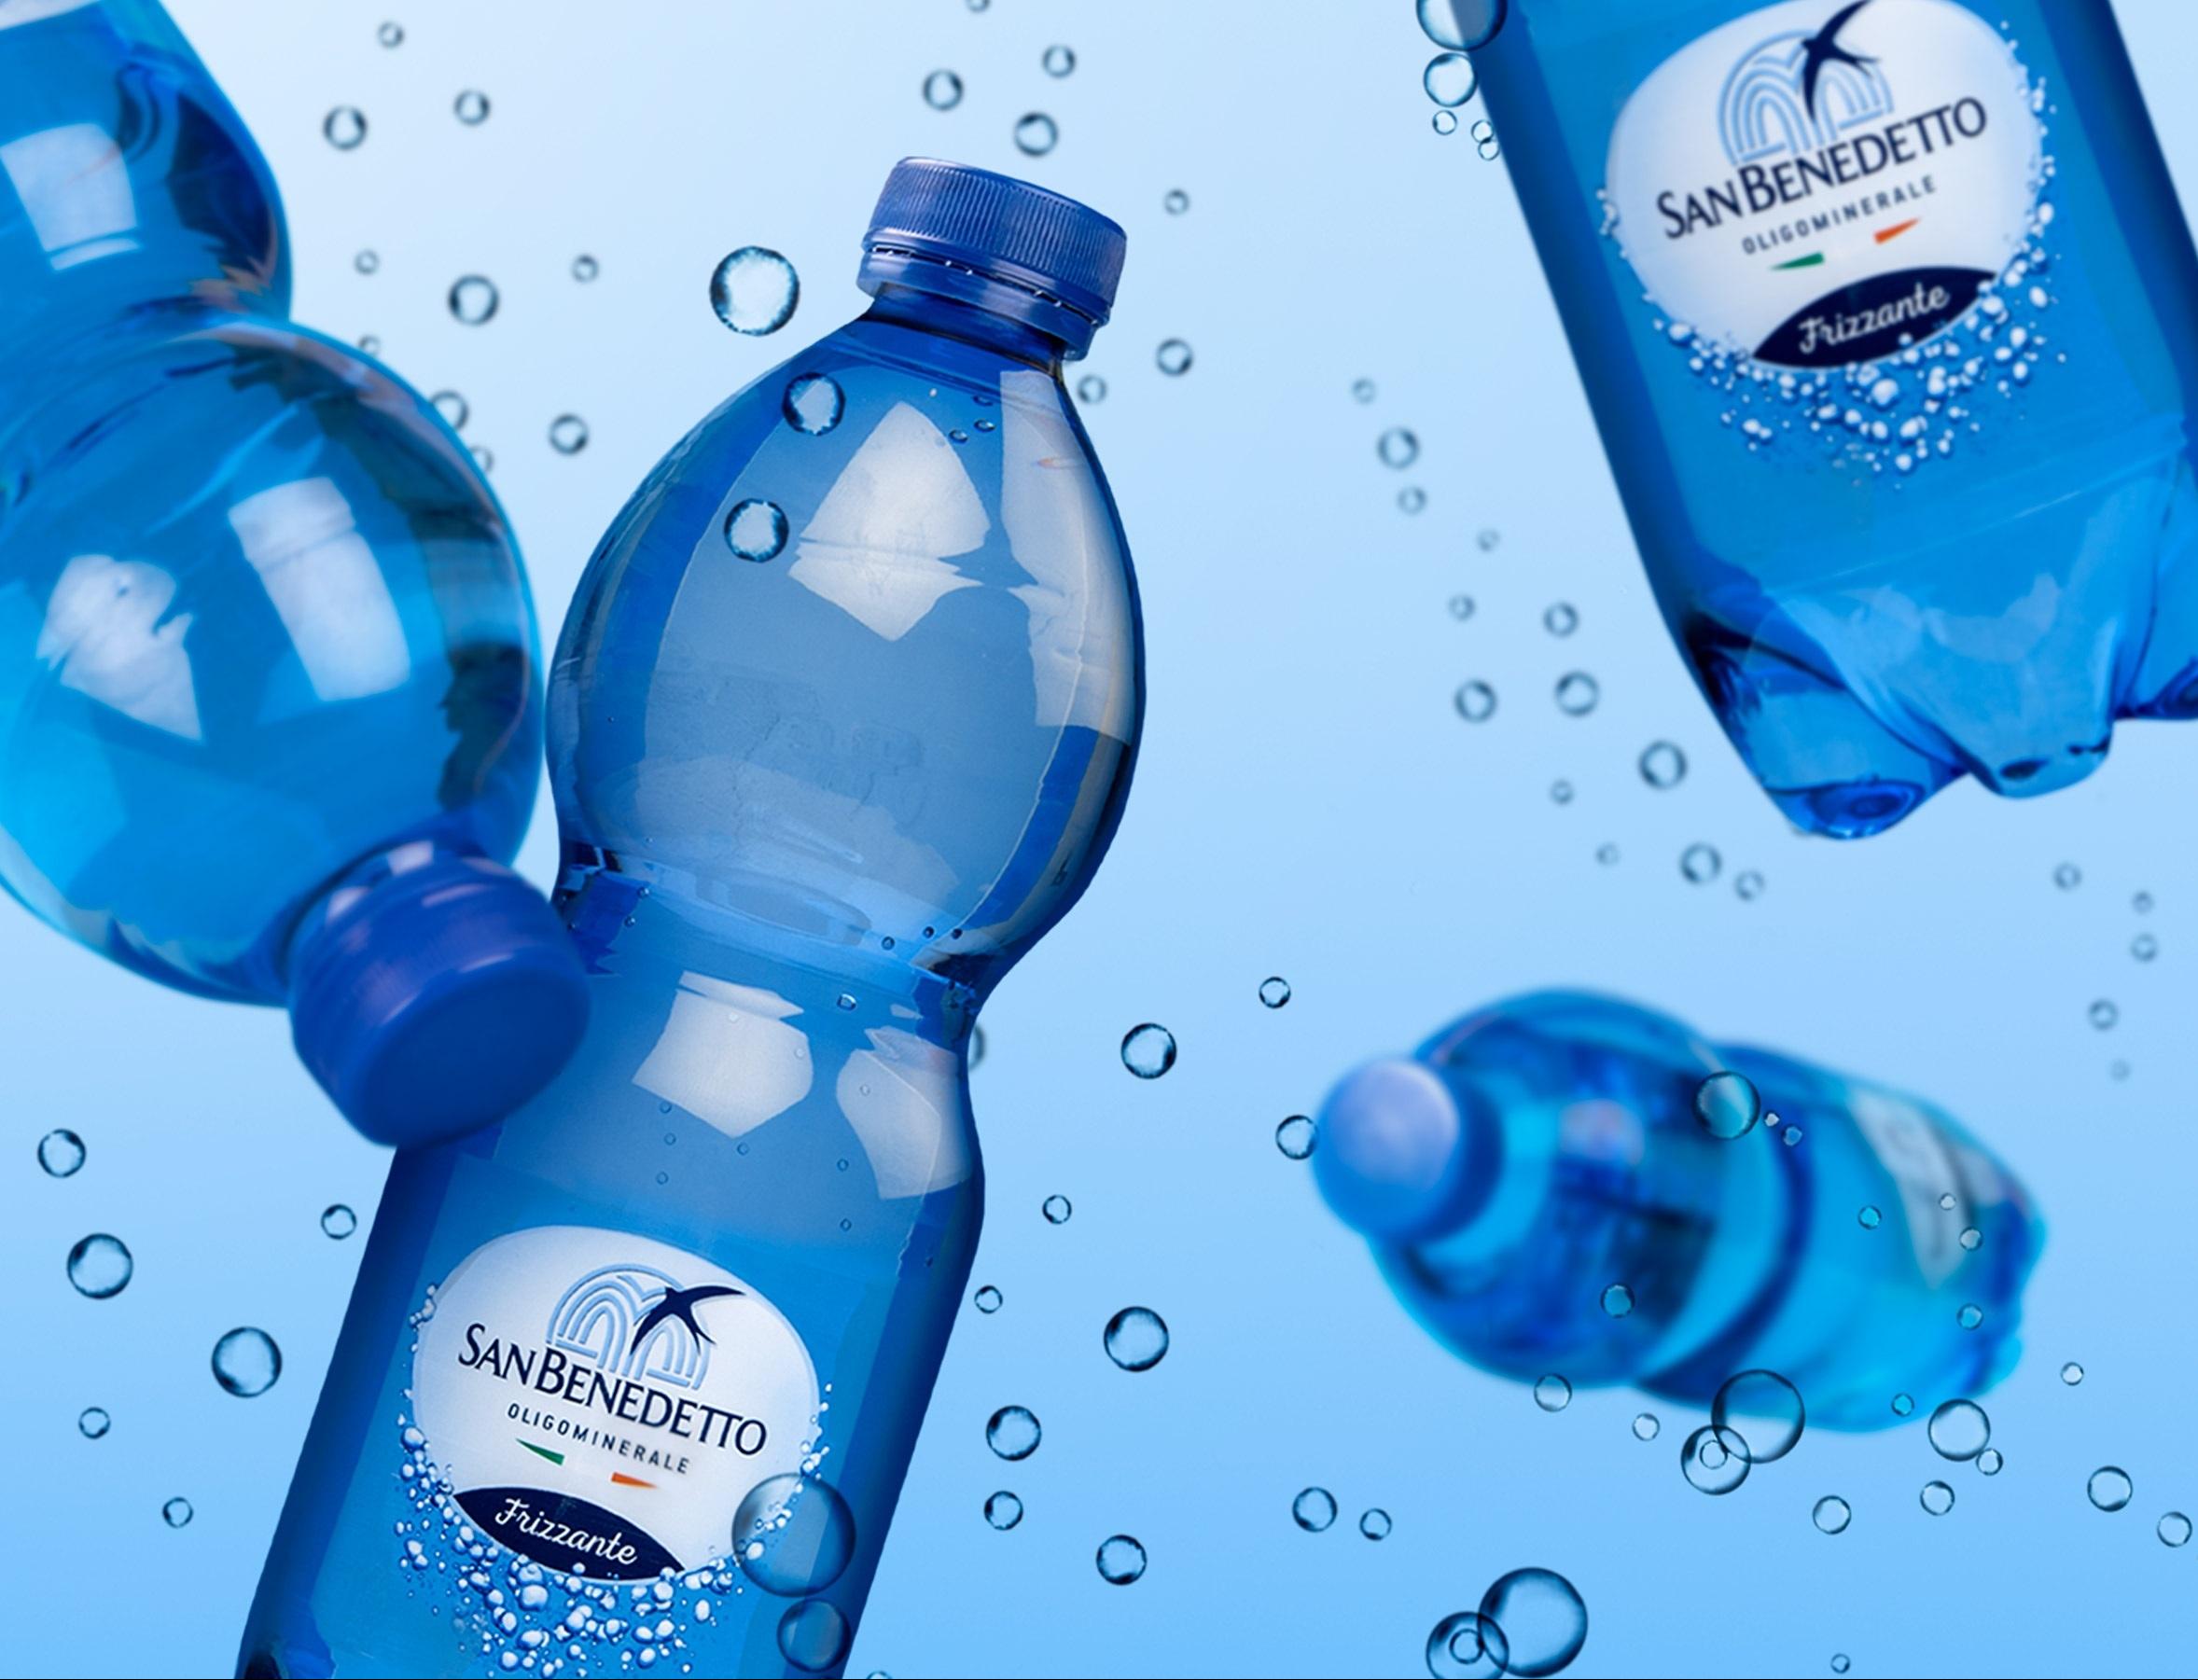 San Benedetto представил в России воду в бутылках из переработанного пластика